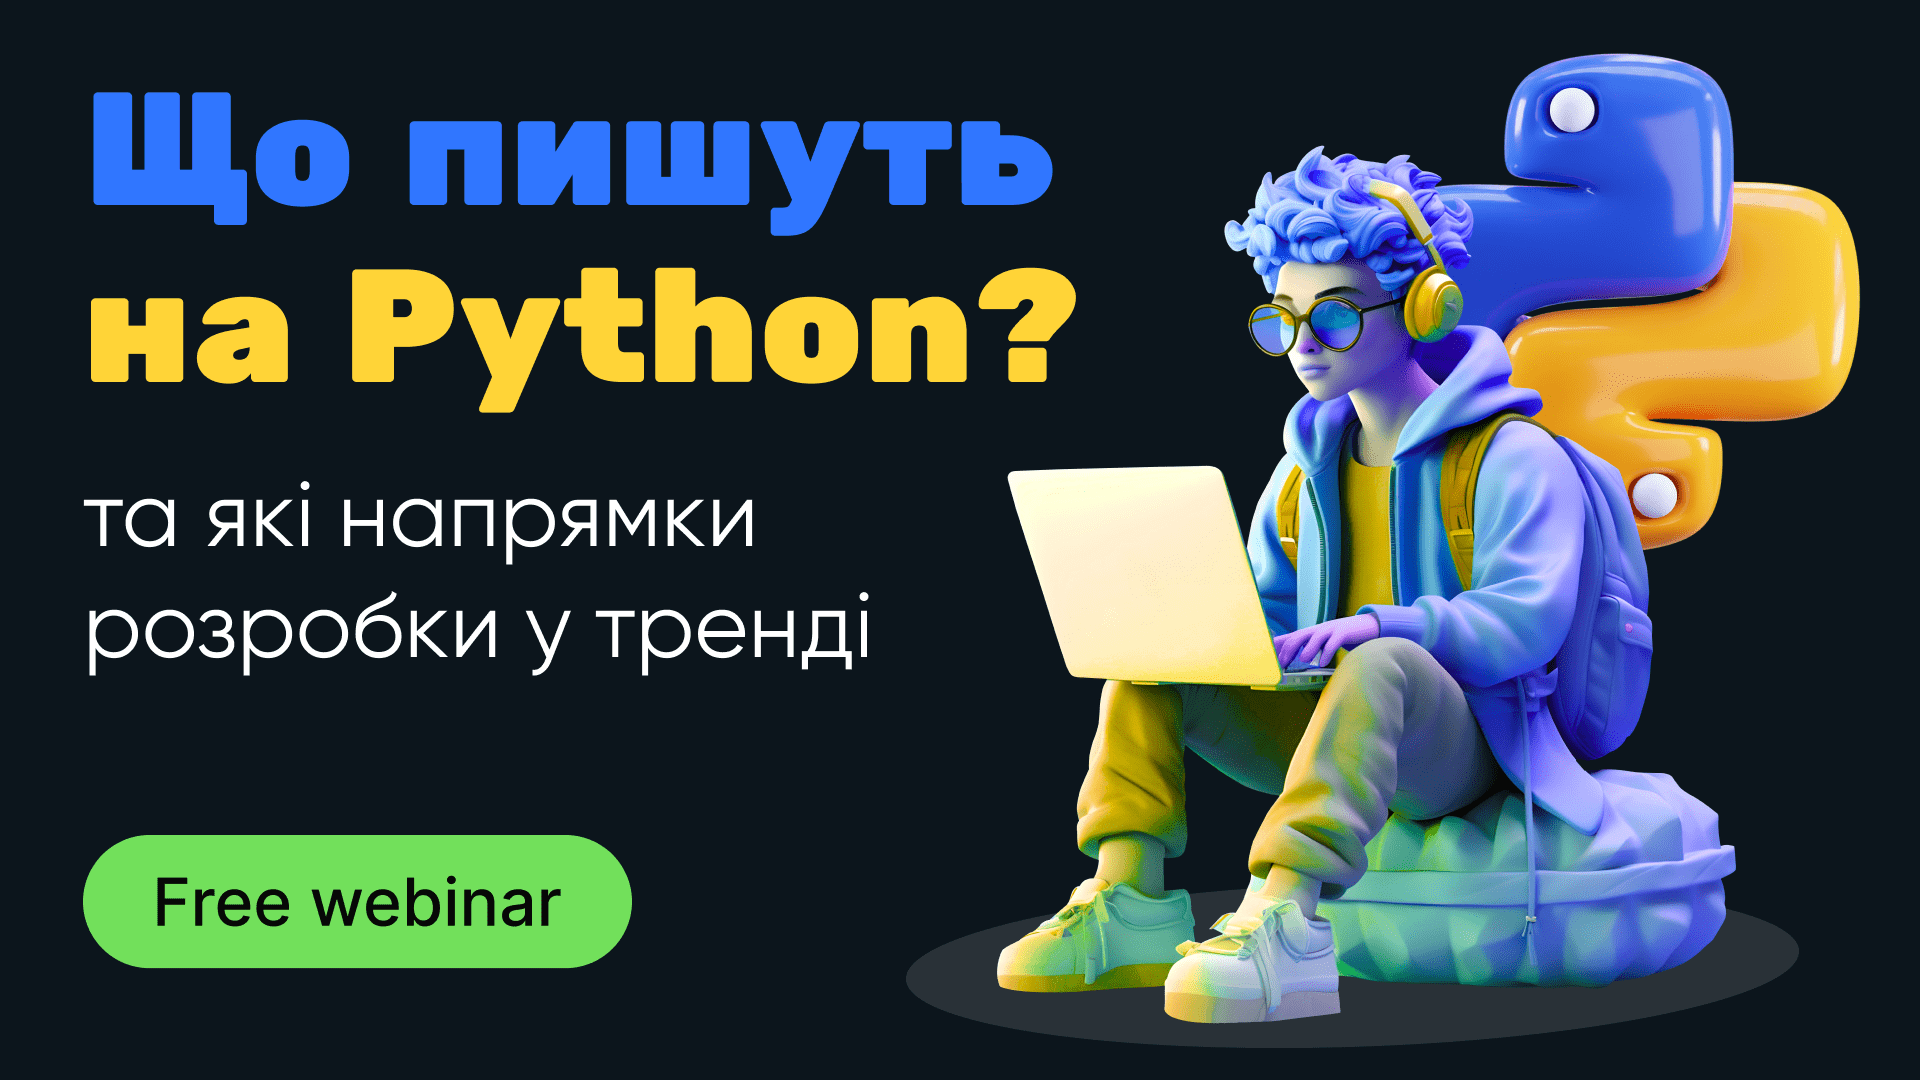 Обкладинка вебінару Що пишуть на Python та які напрямки розробки у тренді